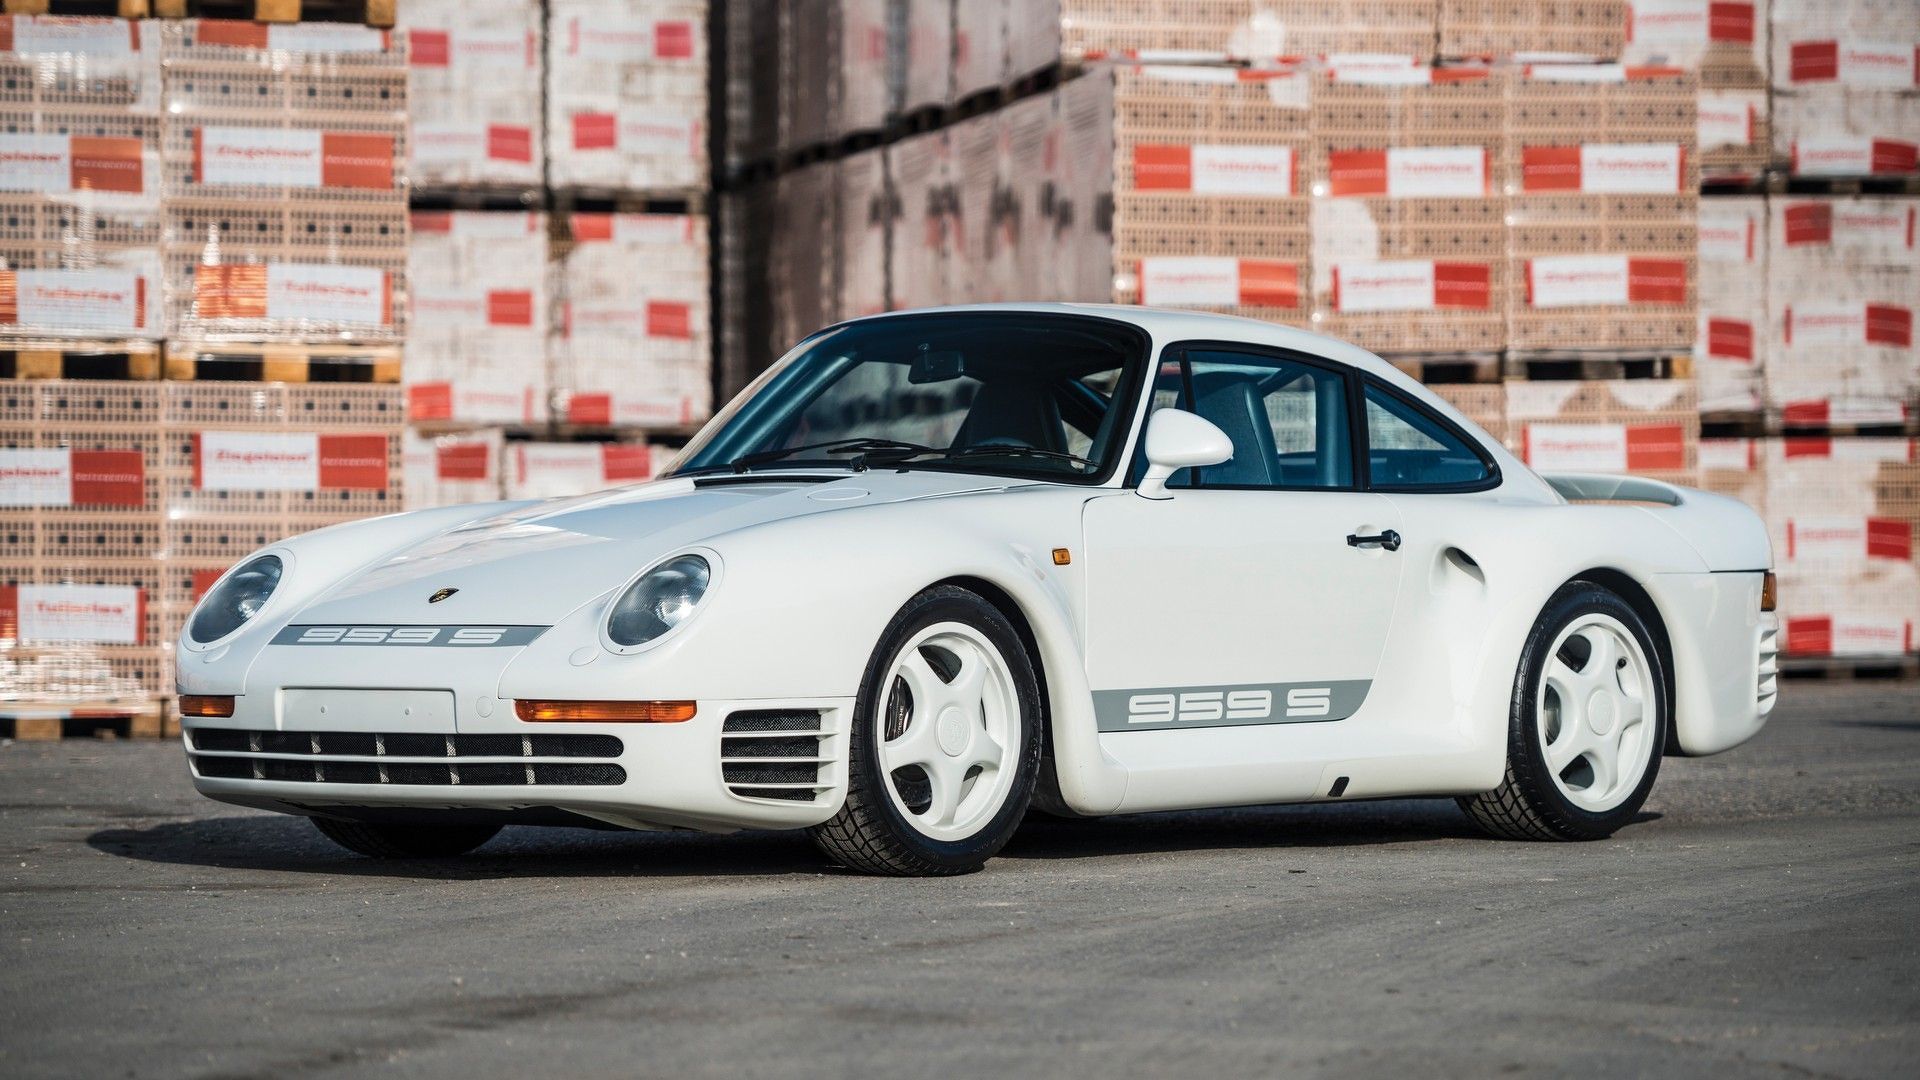 A White Porsche 959 Sports On The Street